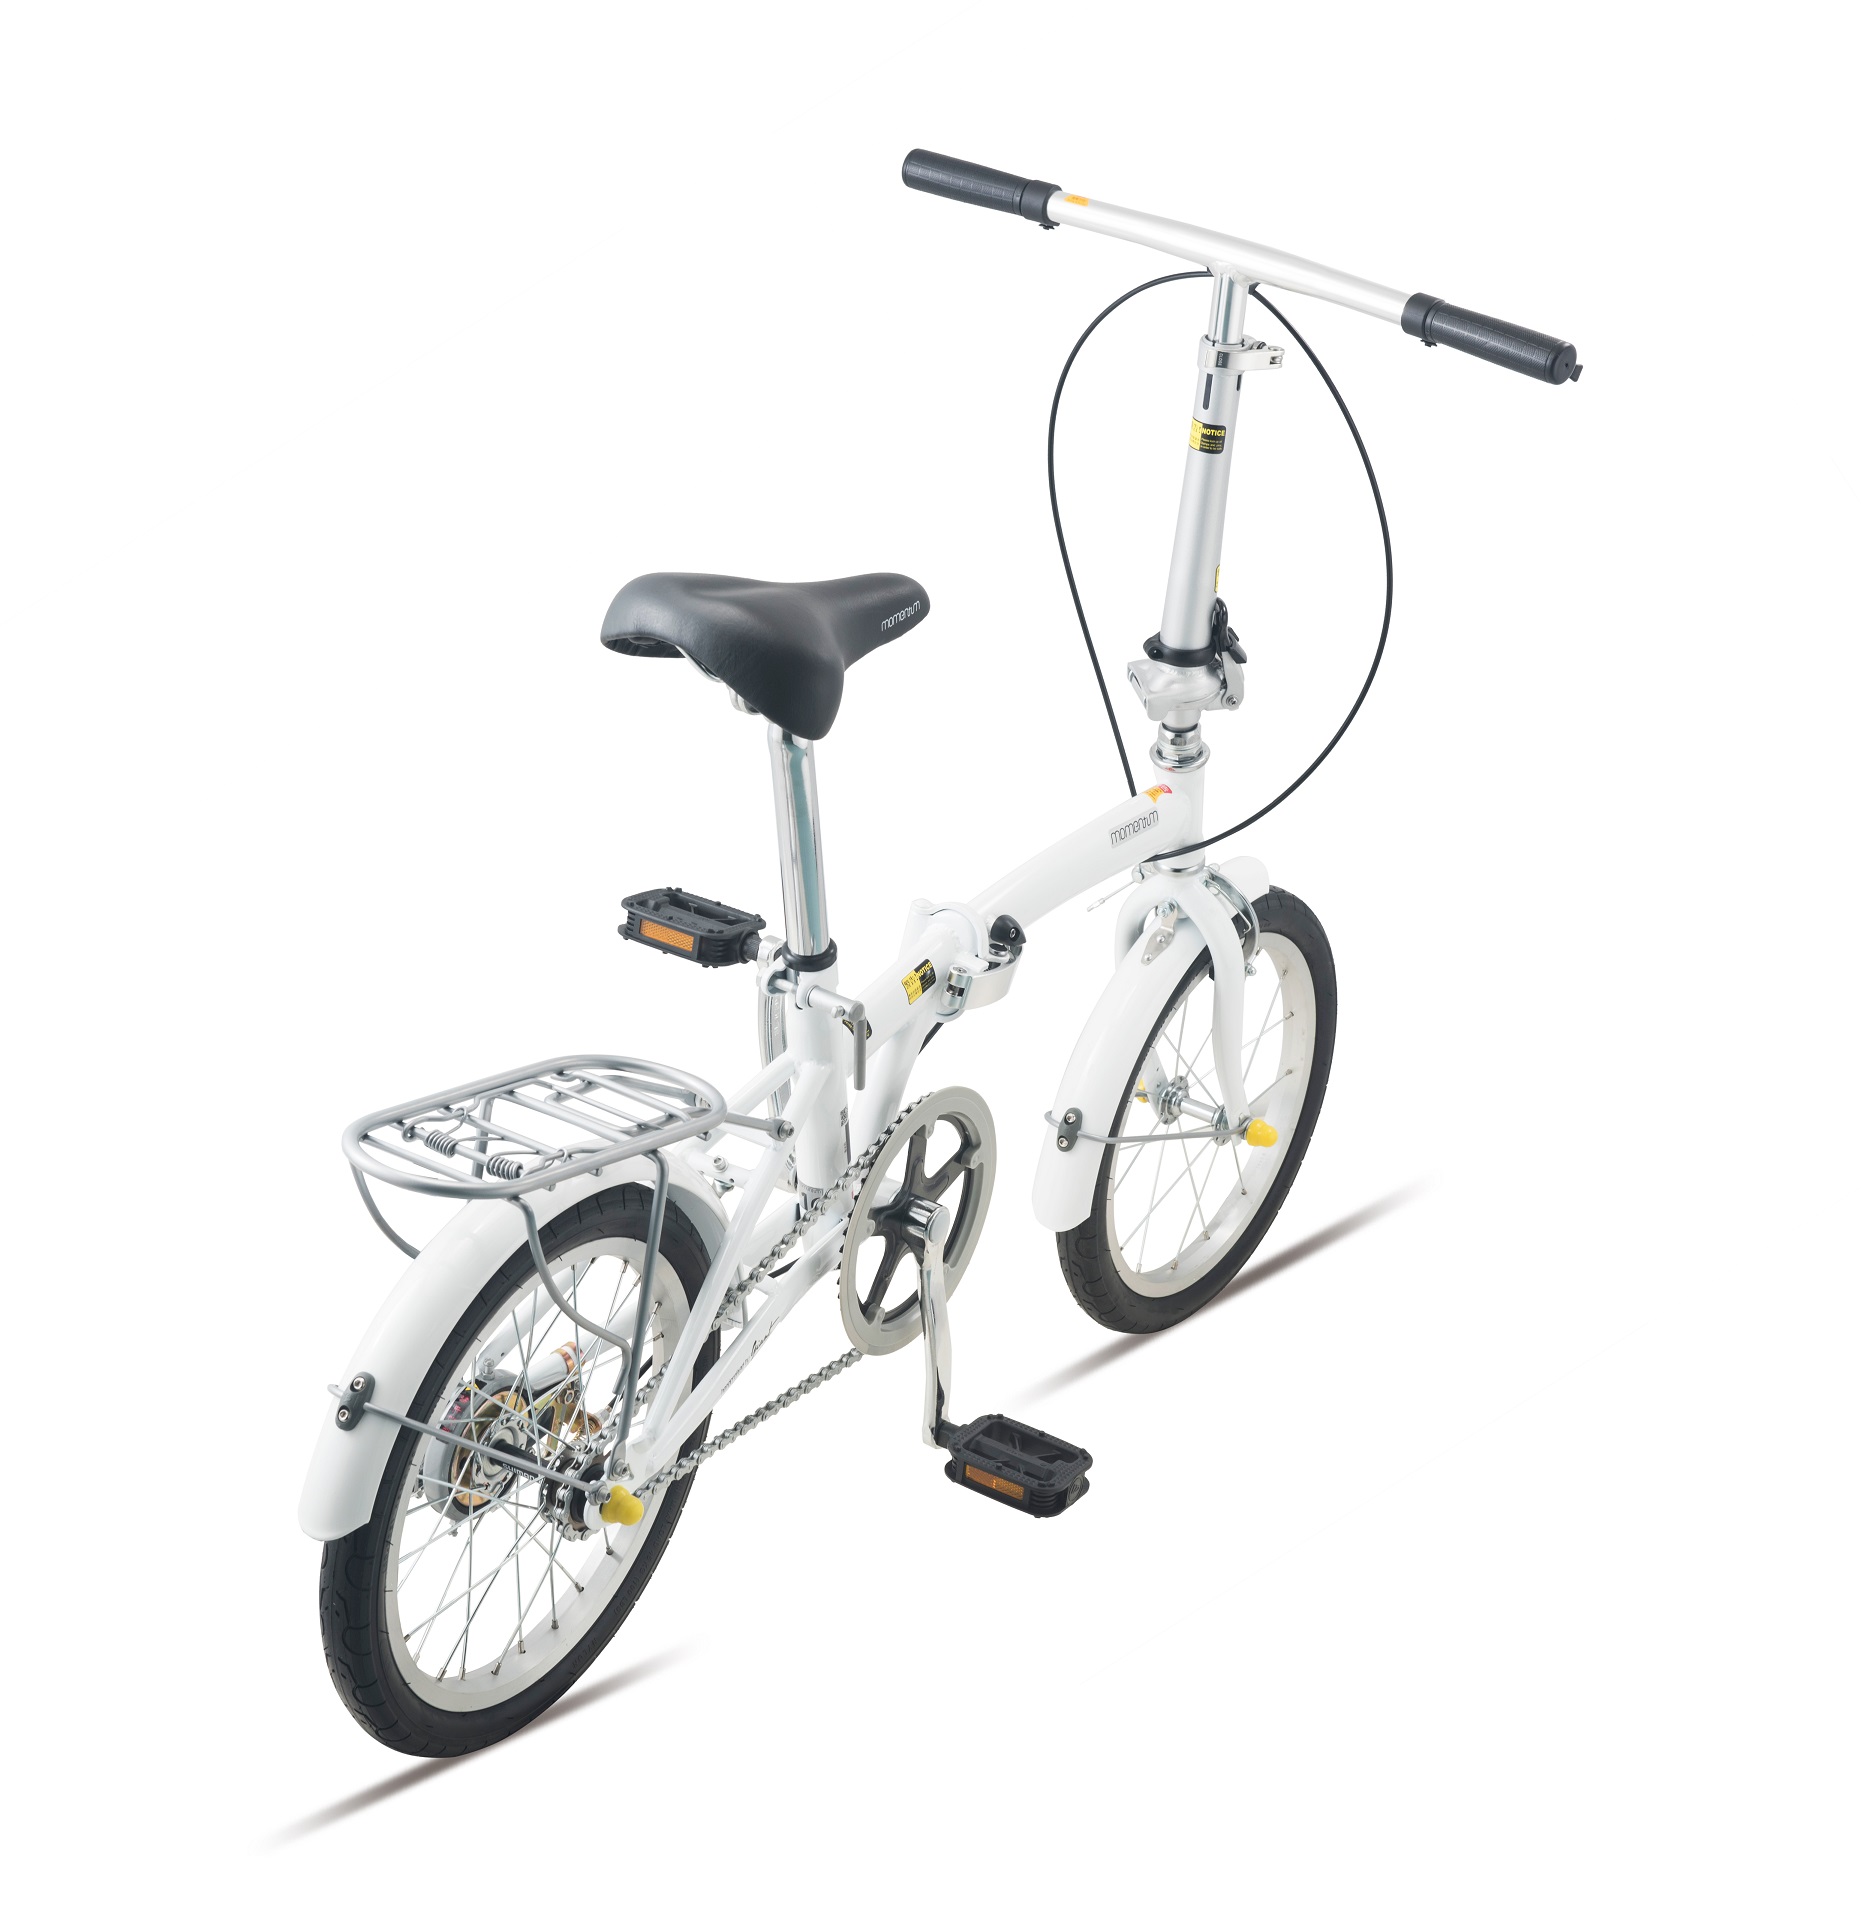 Xe đạp gấp Momentum 2021 Ithink Conway 16 màu trắng